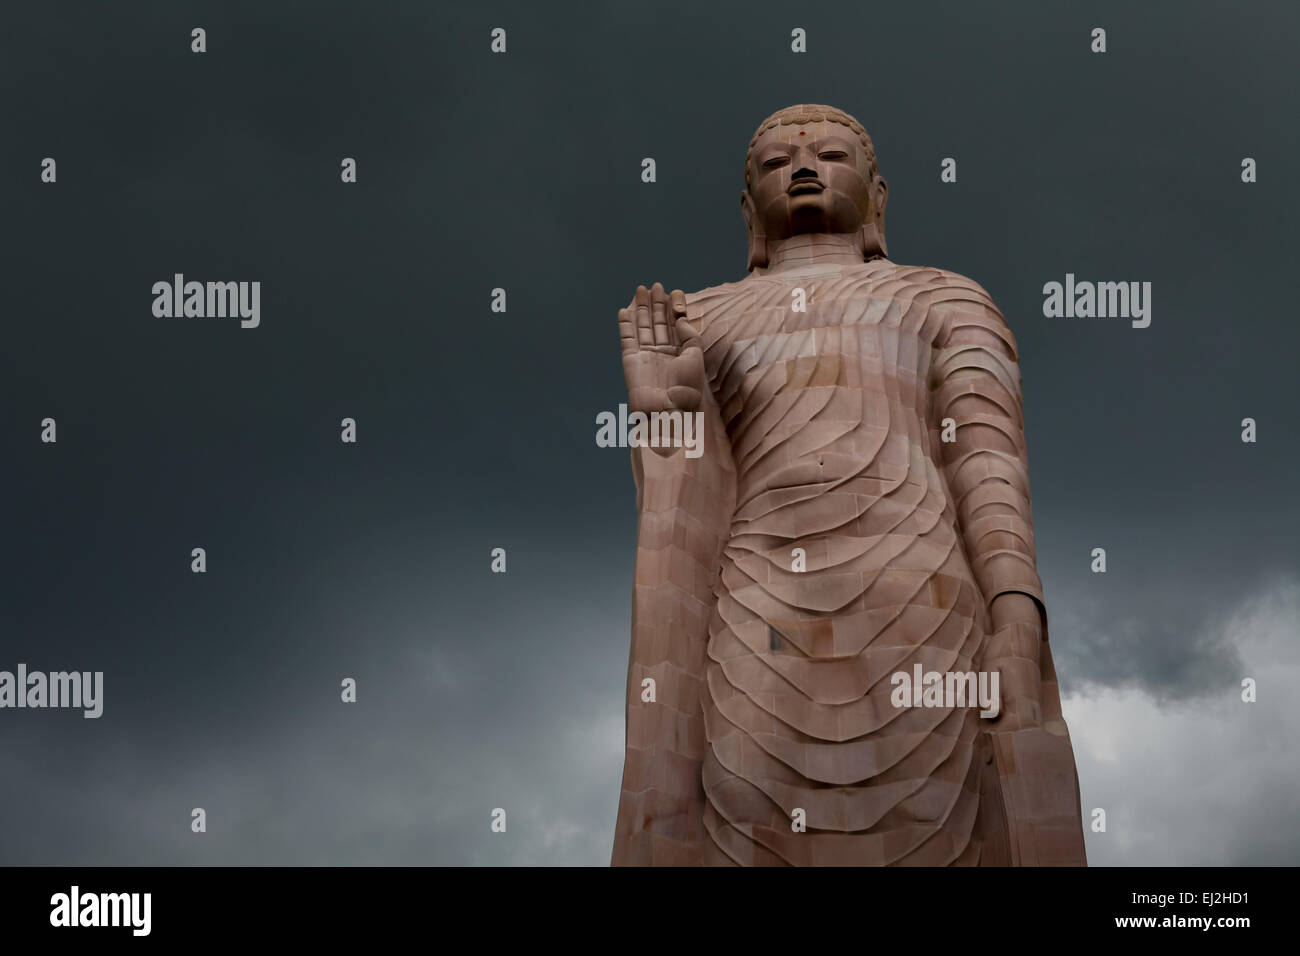 Le 80 pieds de haut standing statue de Bouddha en grès avec le soutien de la Thaïlande. Sarnath, Inde. Banque D'Images